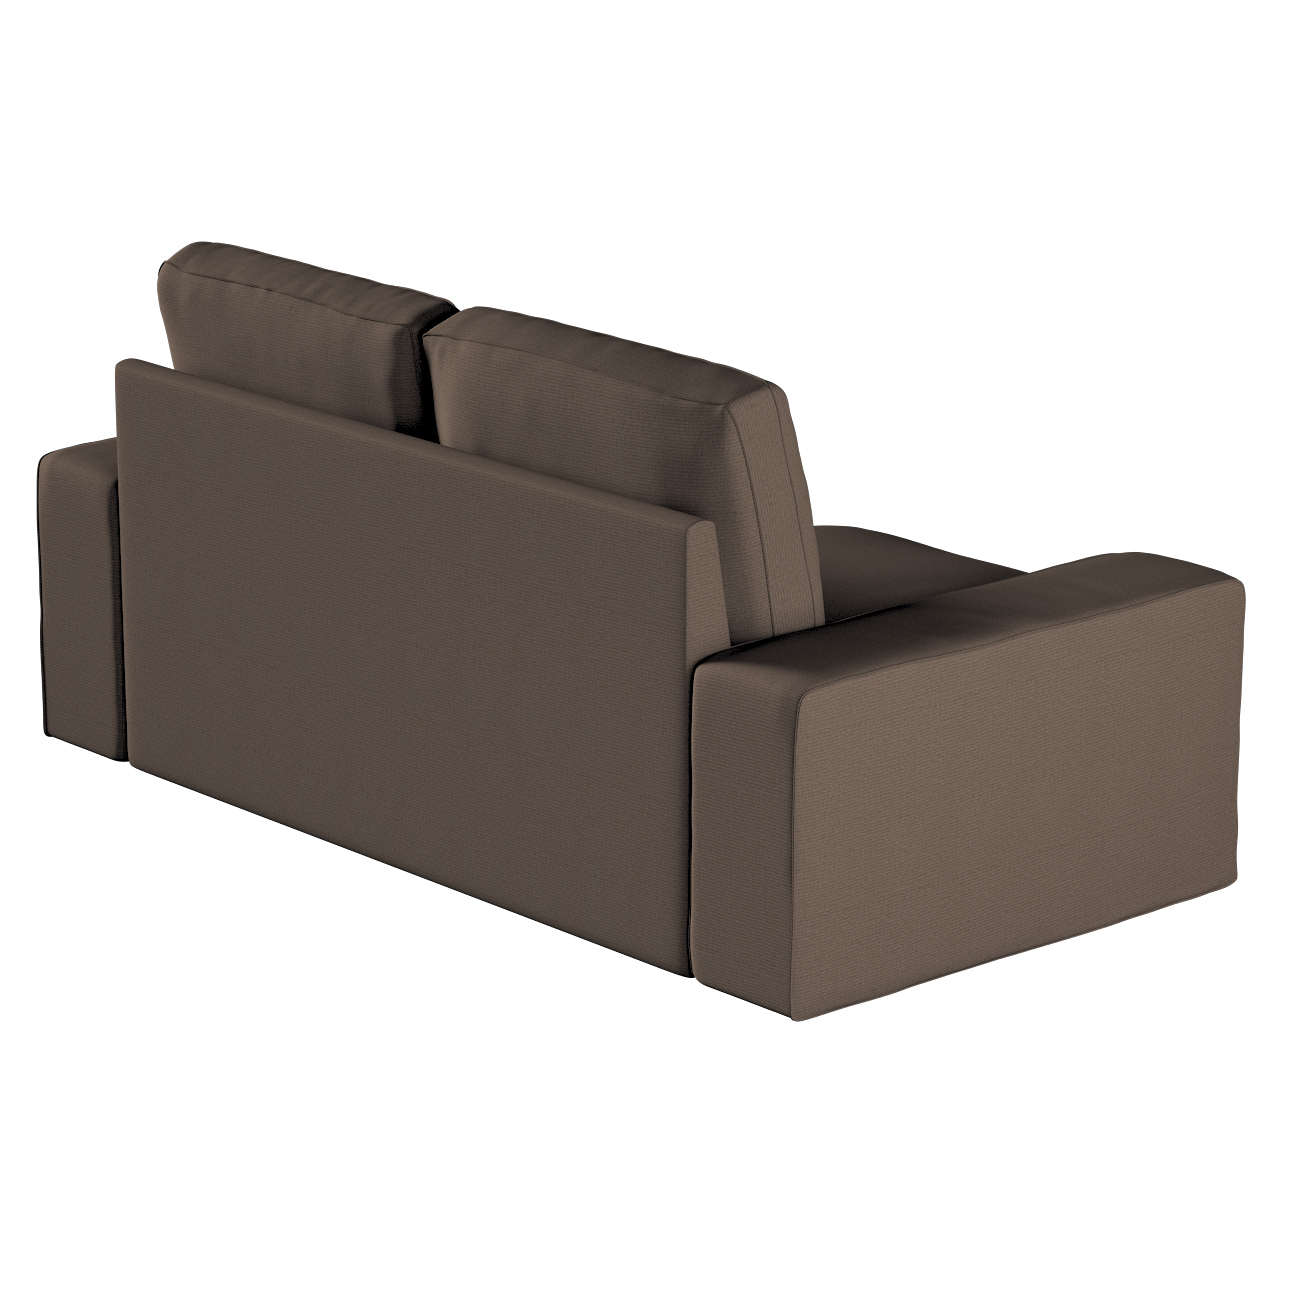 Bezug für Kivik 2-Sitzer Sofa, braun, Bezug für Sofa Kivik 2-Sitzer, Etna ( günstig online kaufen